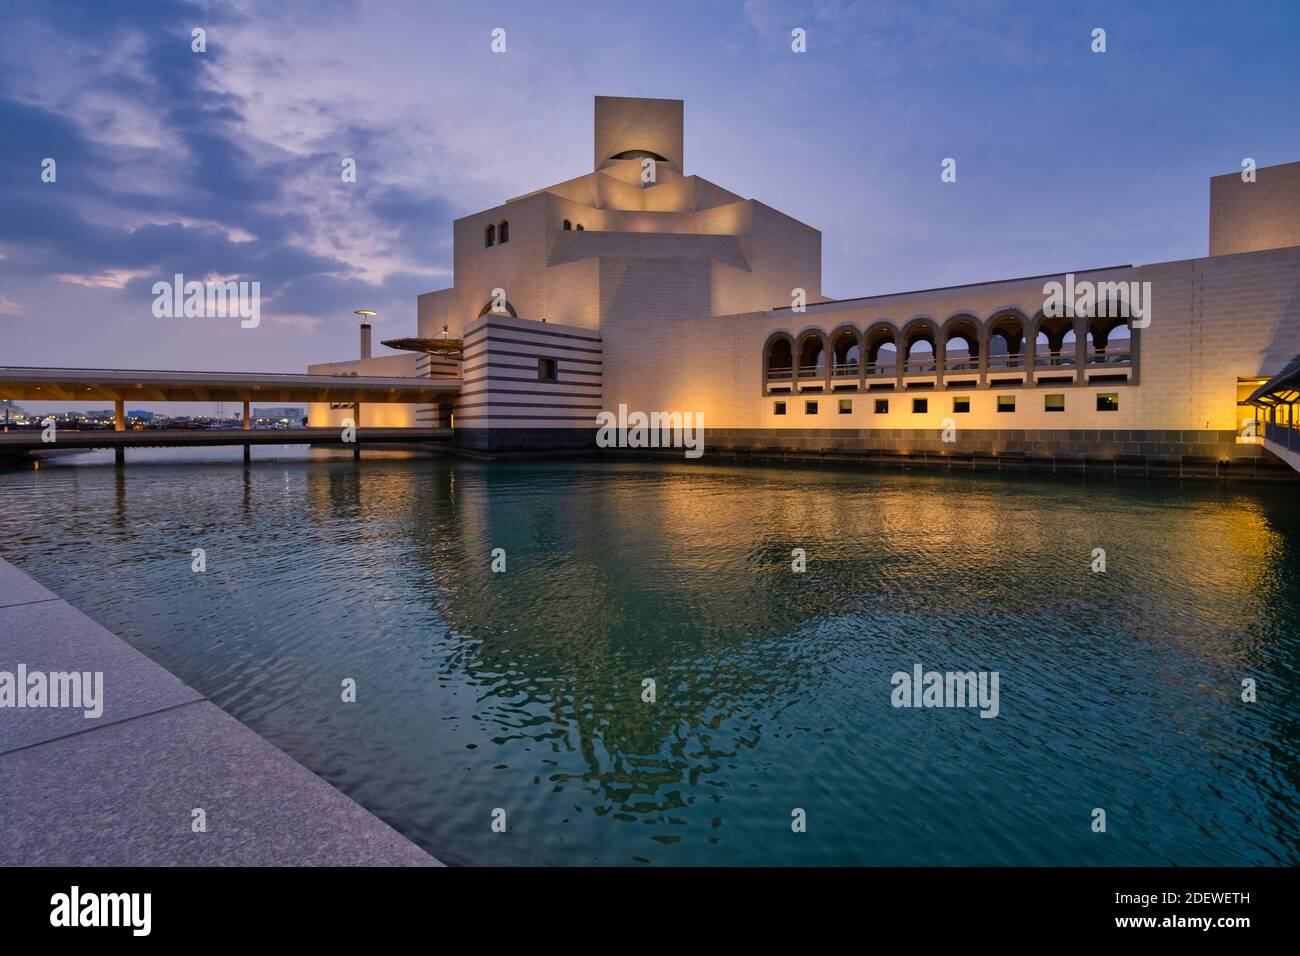 Museo de Arte Islámico, Doha, Qatar al atardecer vista exterior que muestra la arquitectura moderna del edificio con reflejo de la luz en el golfo Árabe Foto de stock